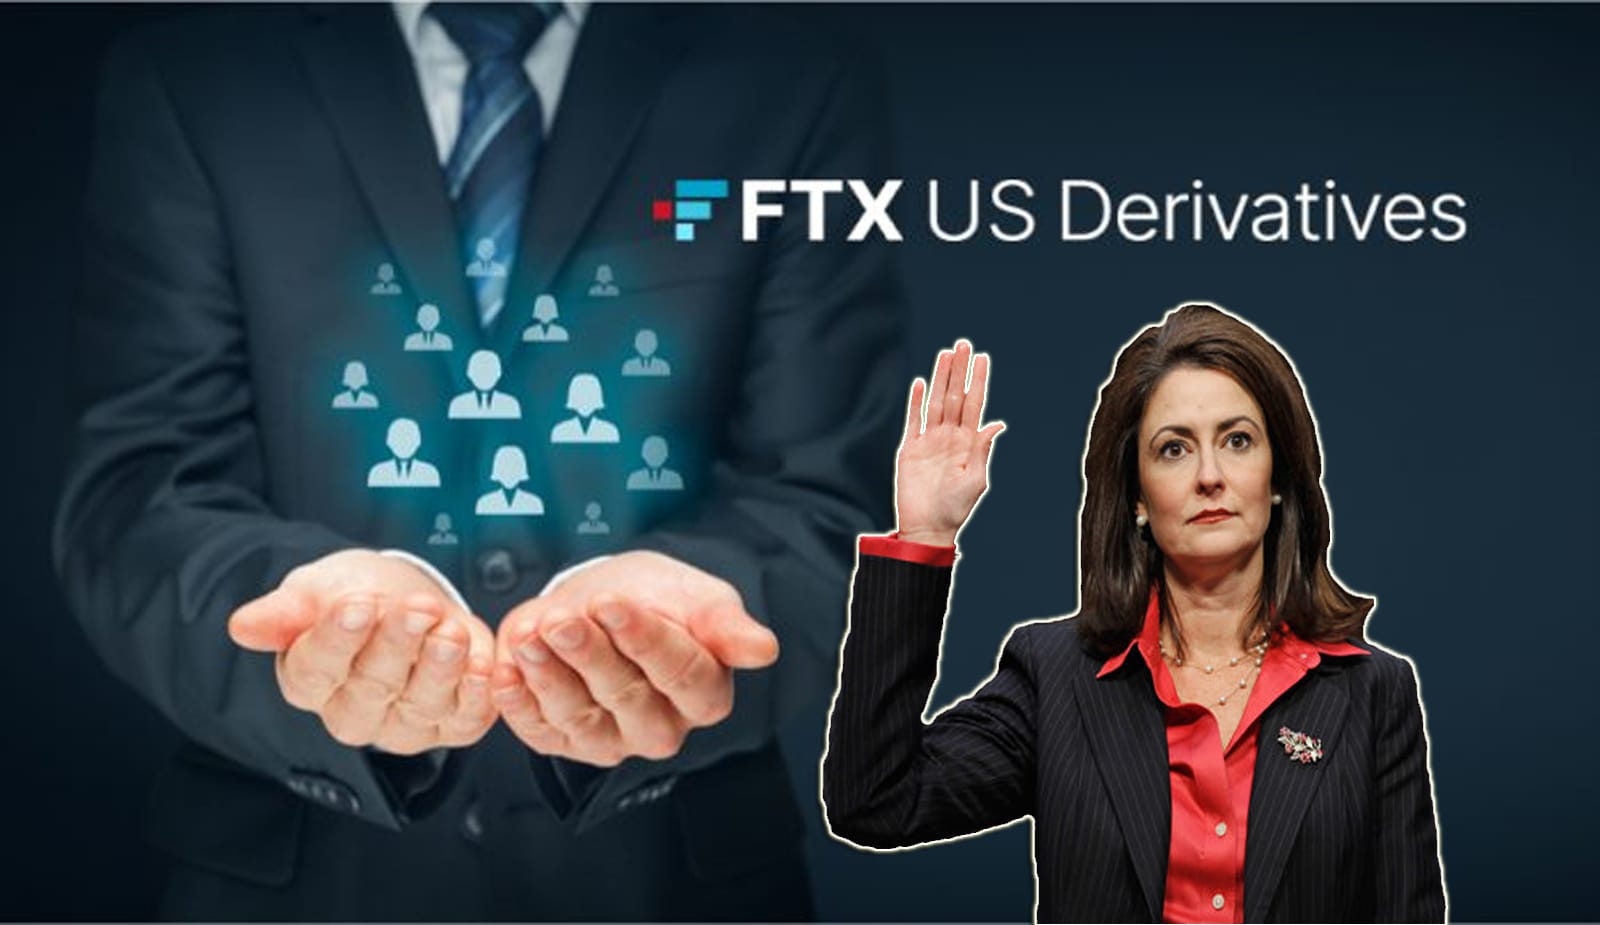 FTX US Derivatives вводит в совет директоров экс-комиссара агентства CFTC. Заглавный коллаж новости.